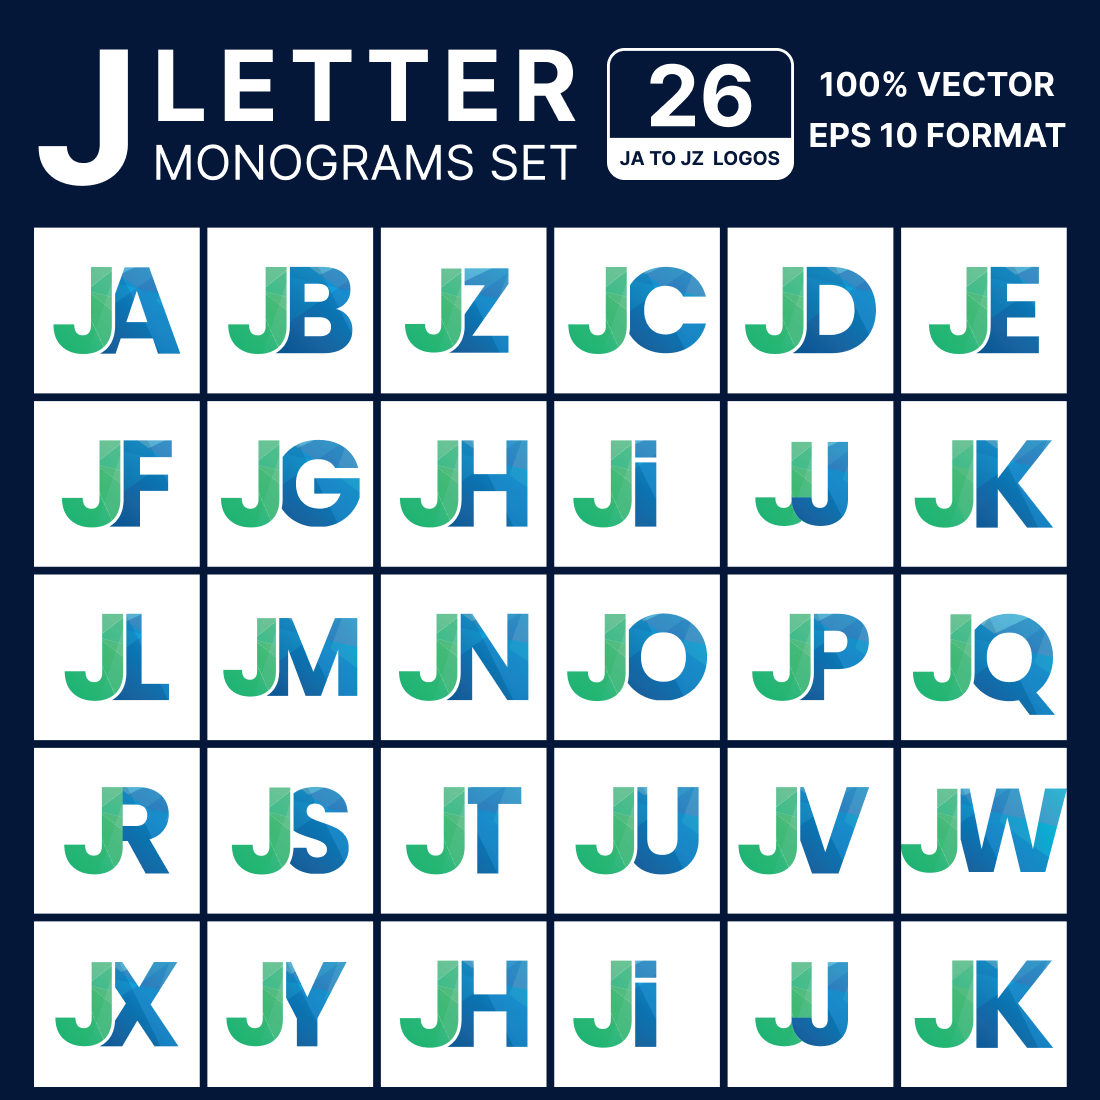 26 JA to JZ Alphabet Monograms cover image.